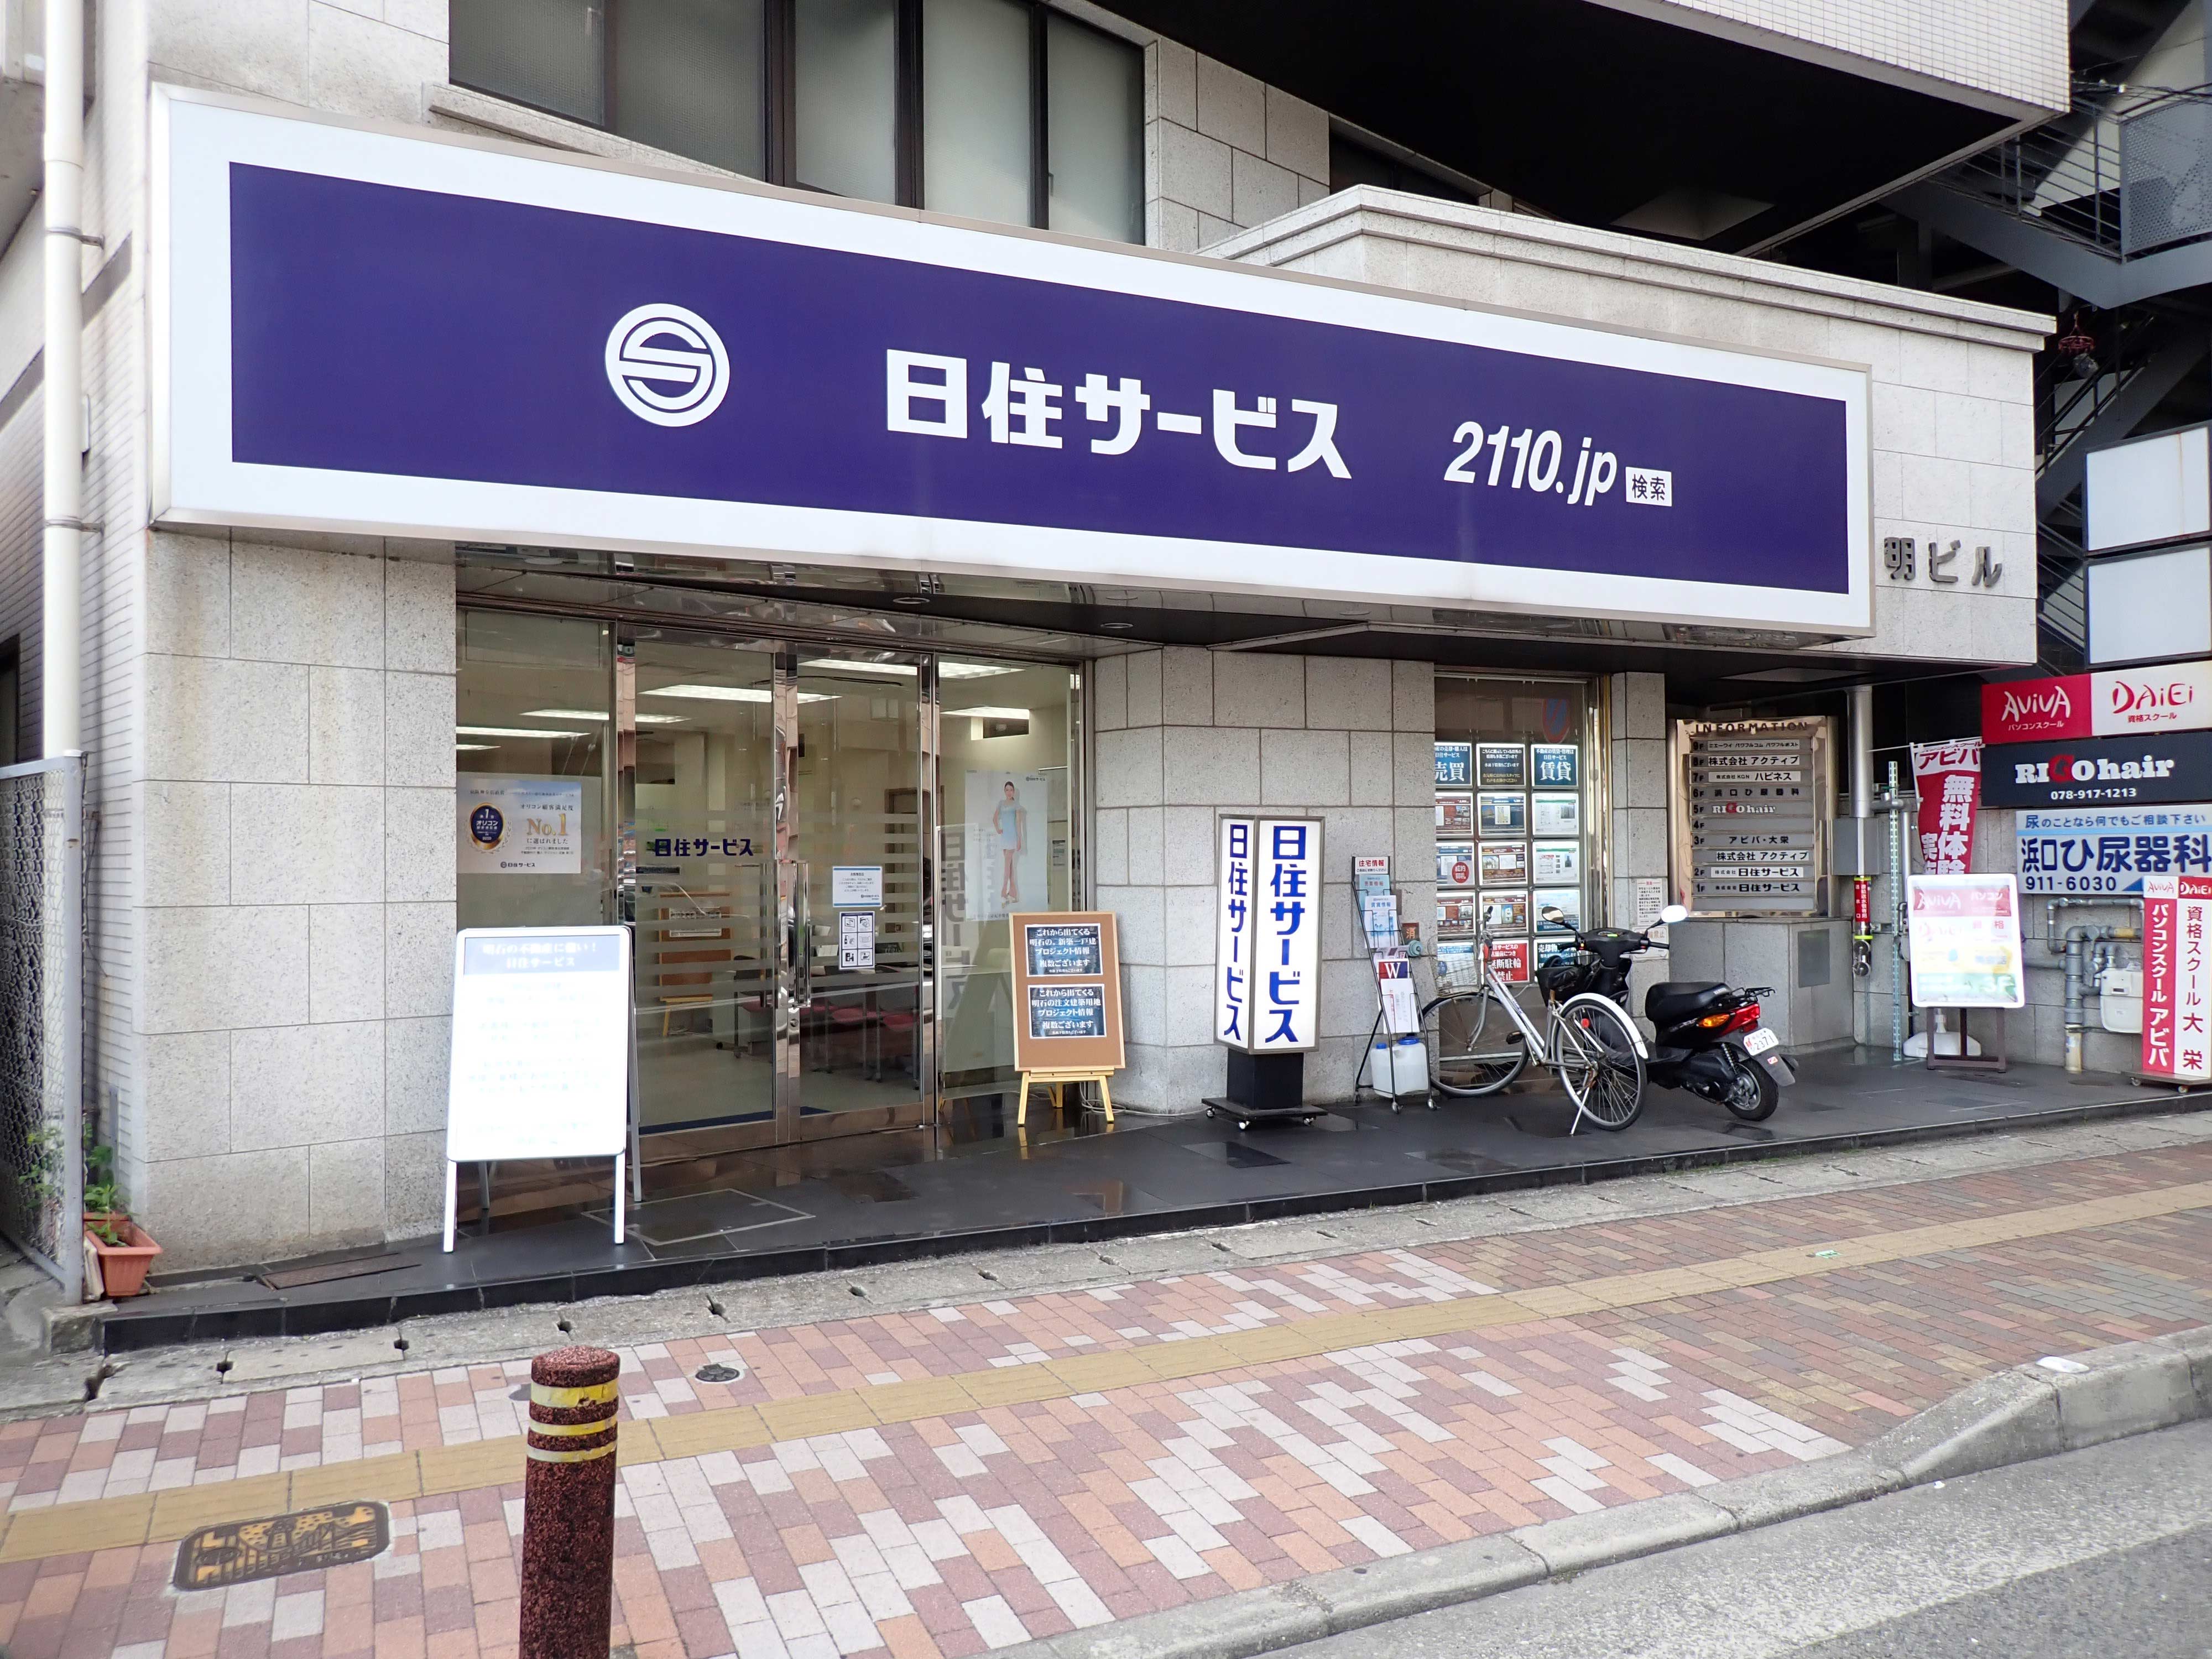 【反響営業】京阪神エリアで活躍できる不動産売買営業